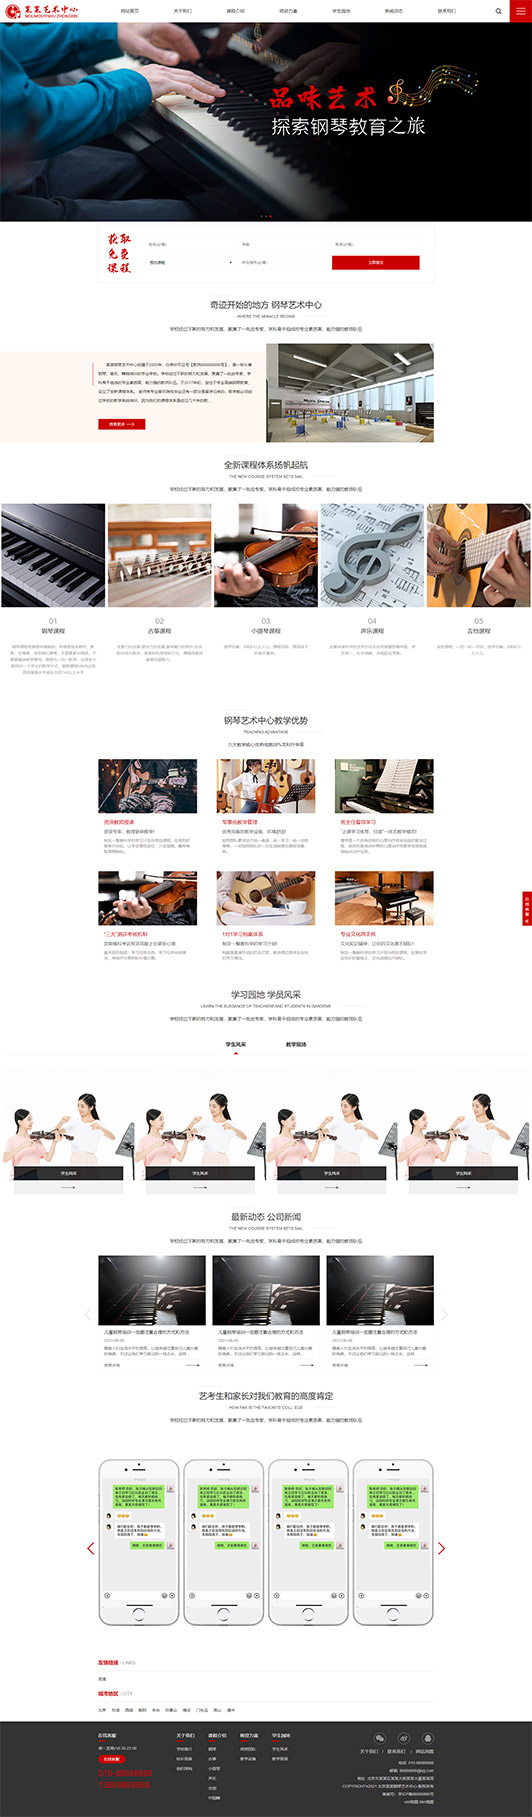 遵义钢琴艺术培训公司响应式企业网站